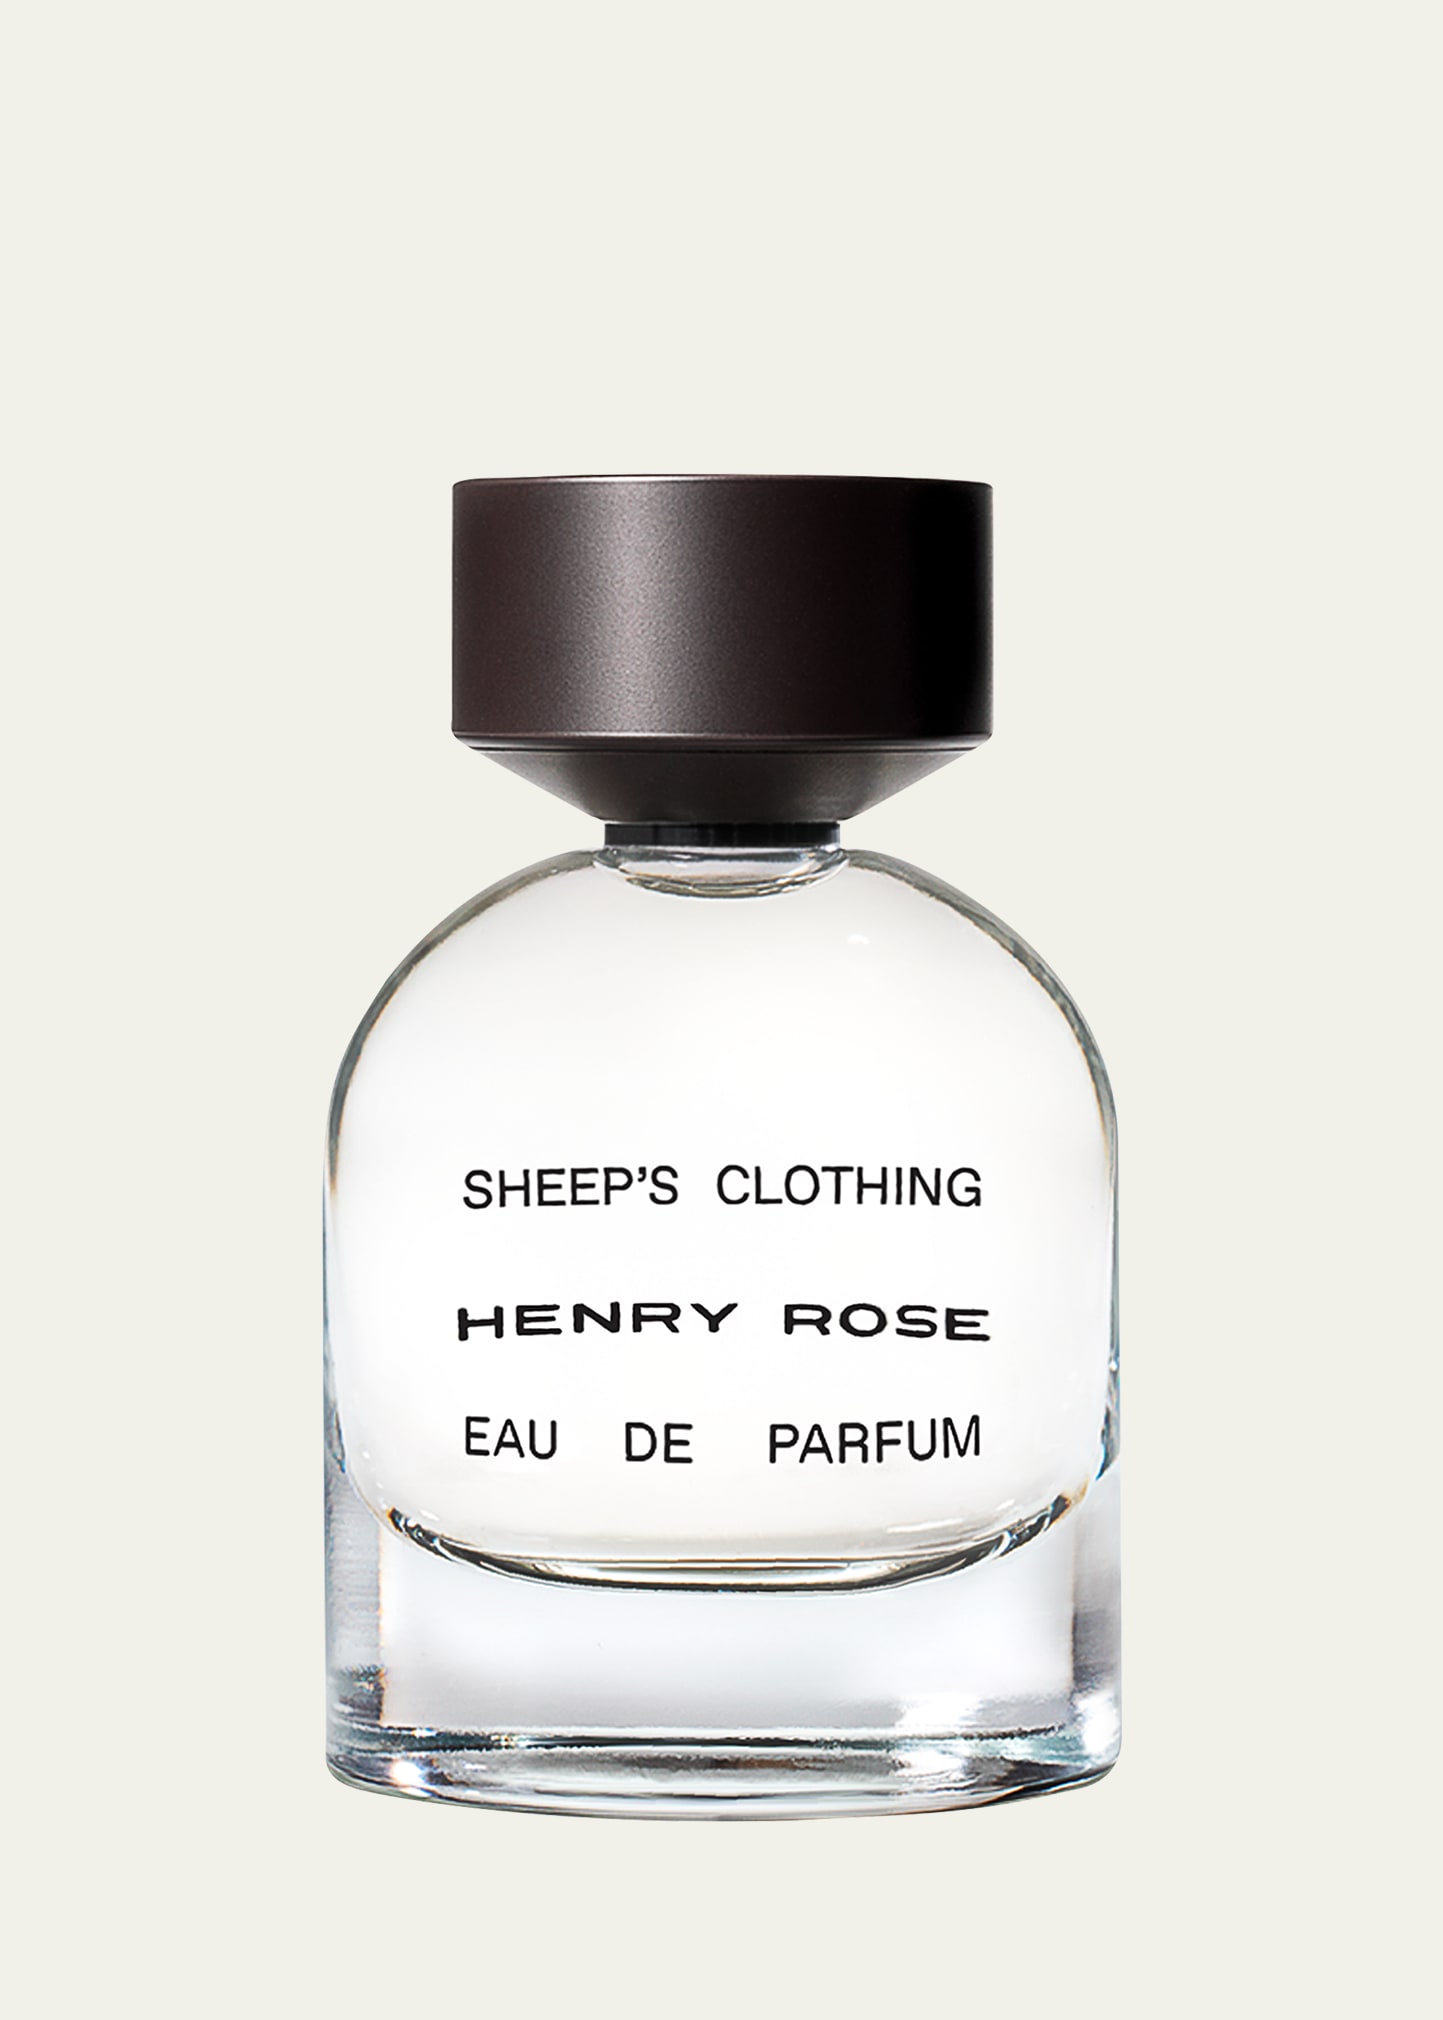 Sheep's Clothing Eau de Parfum, 1.7 oz.